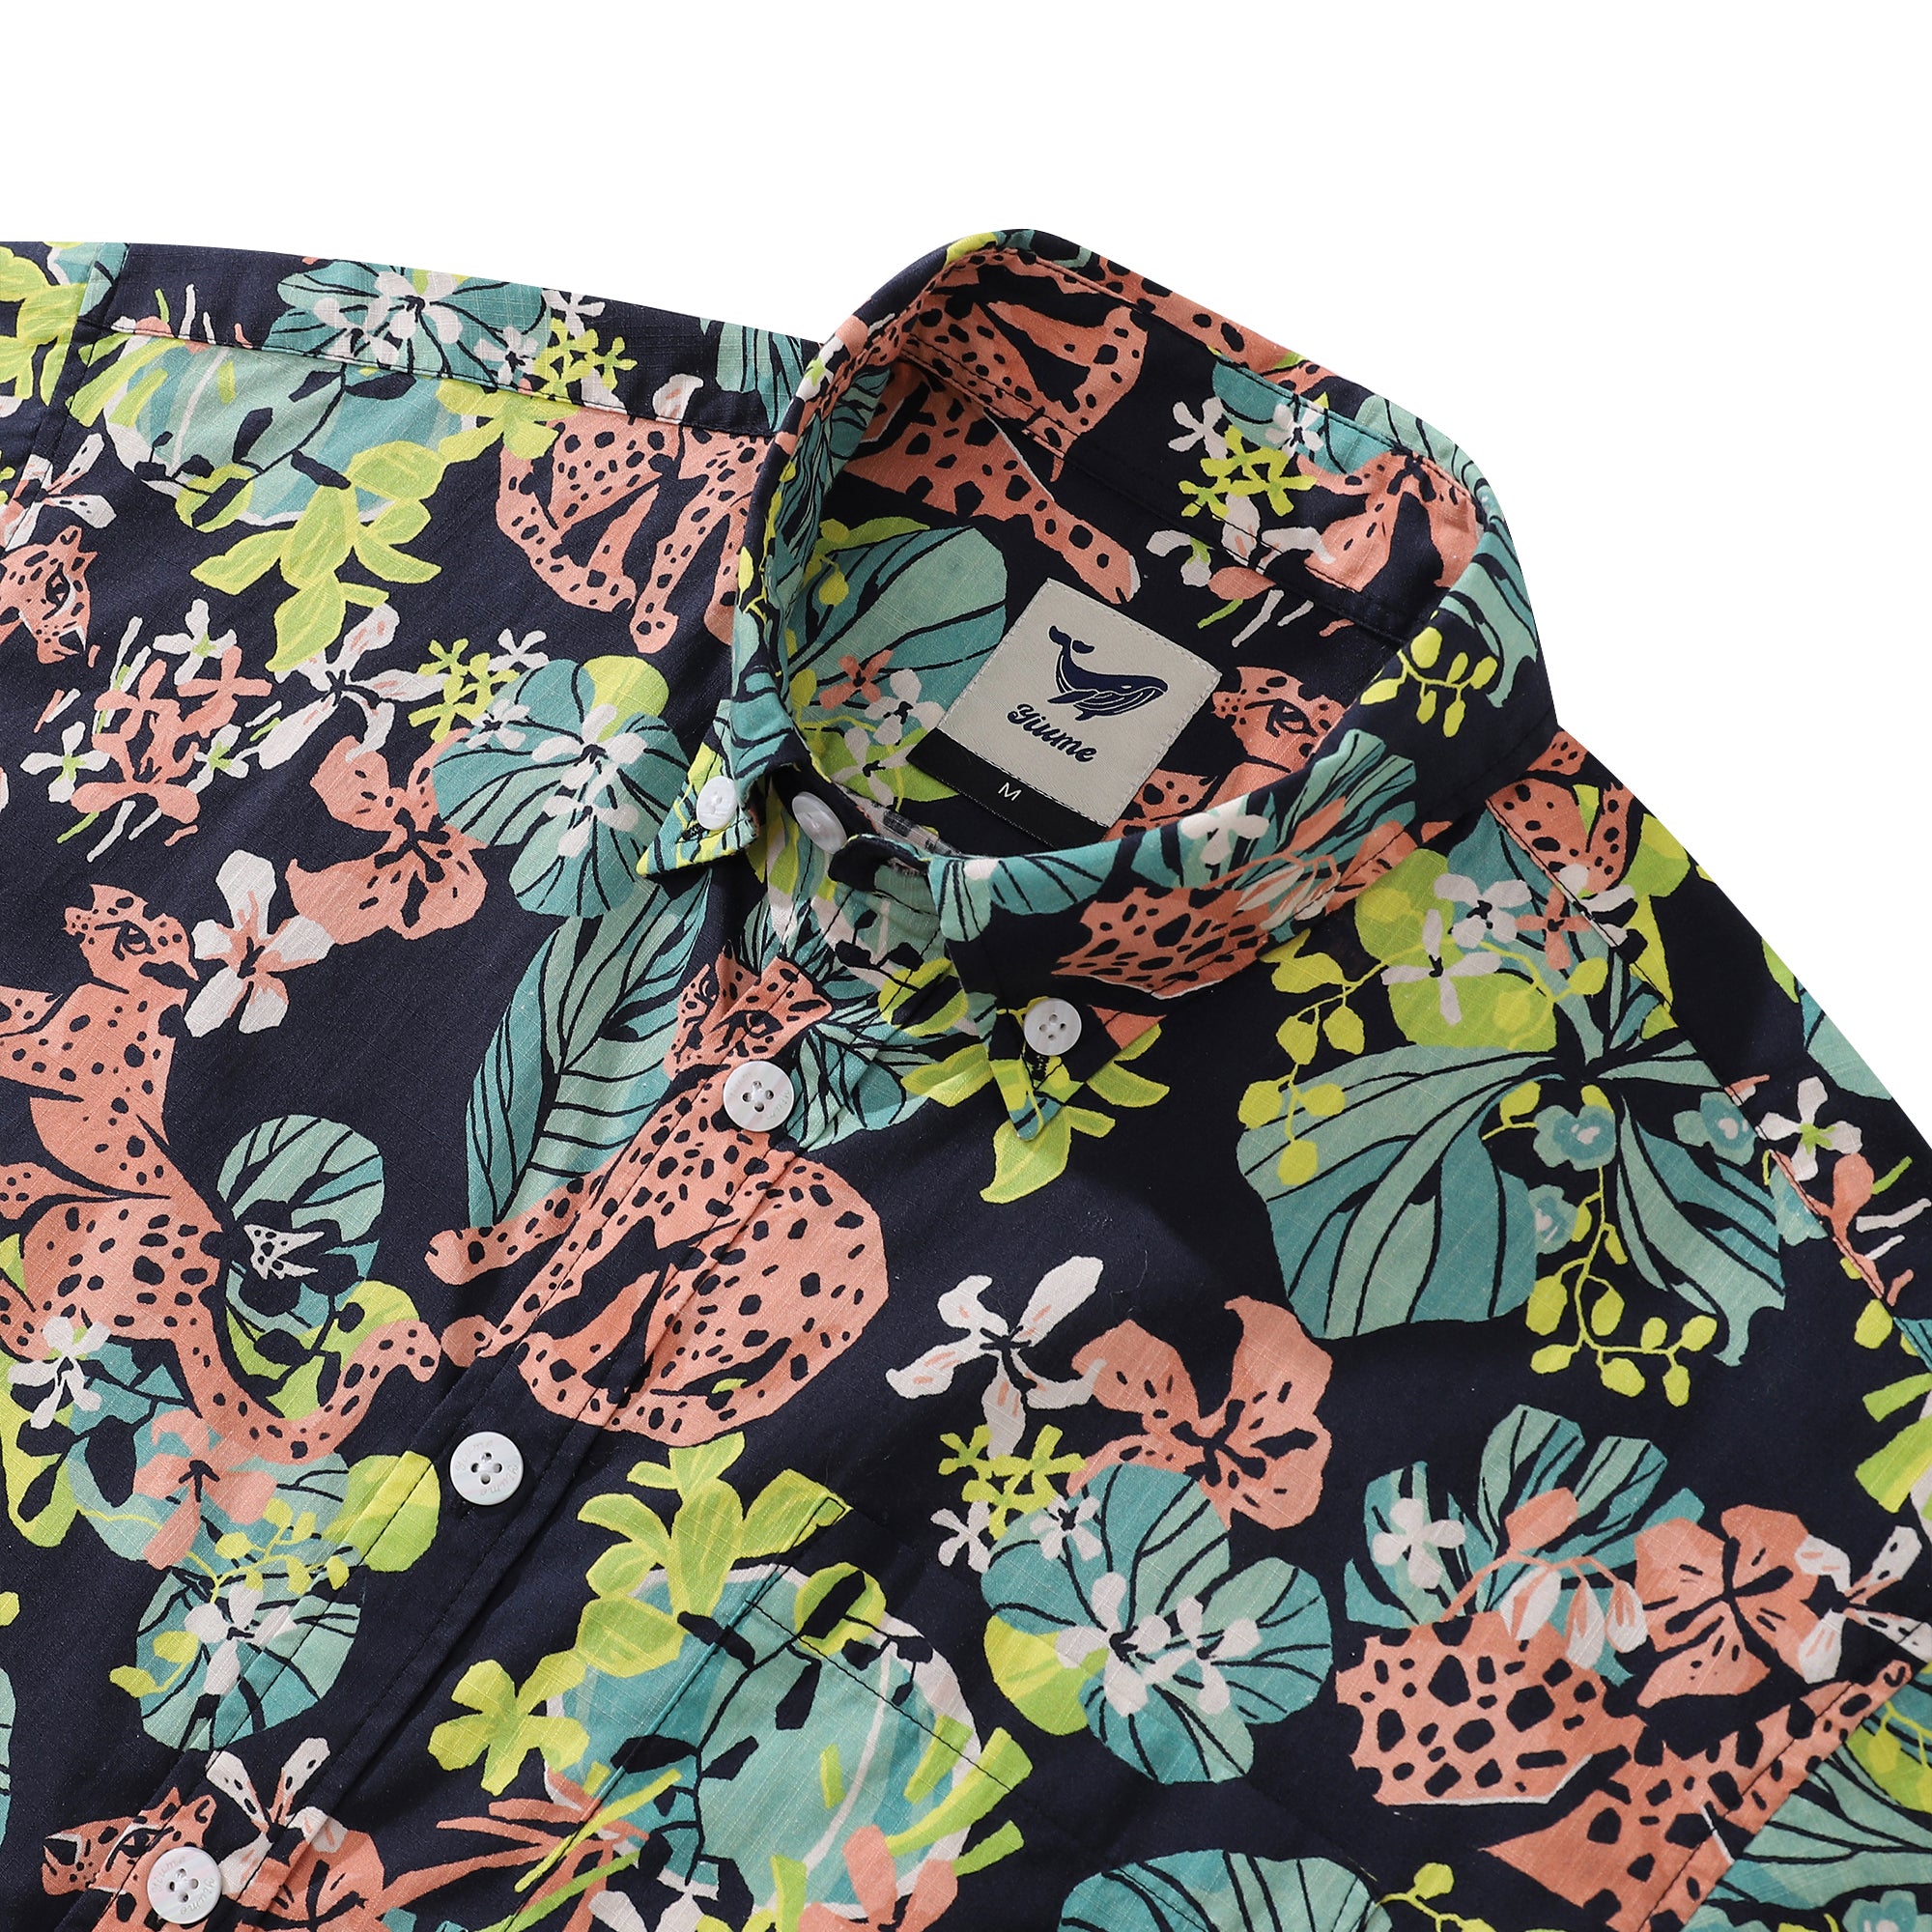 Men's Hawaiian Shirt Tropical Rainforest Print Cotton Button-down Short Sleeve Aloha Shirt